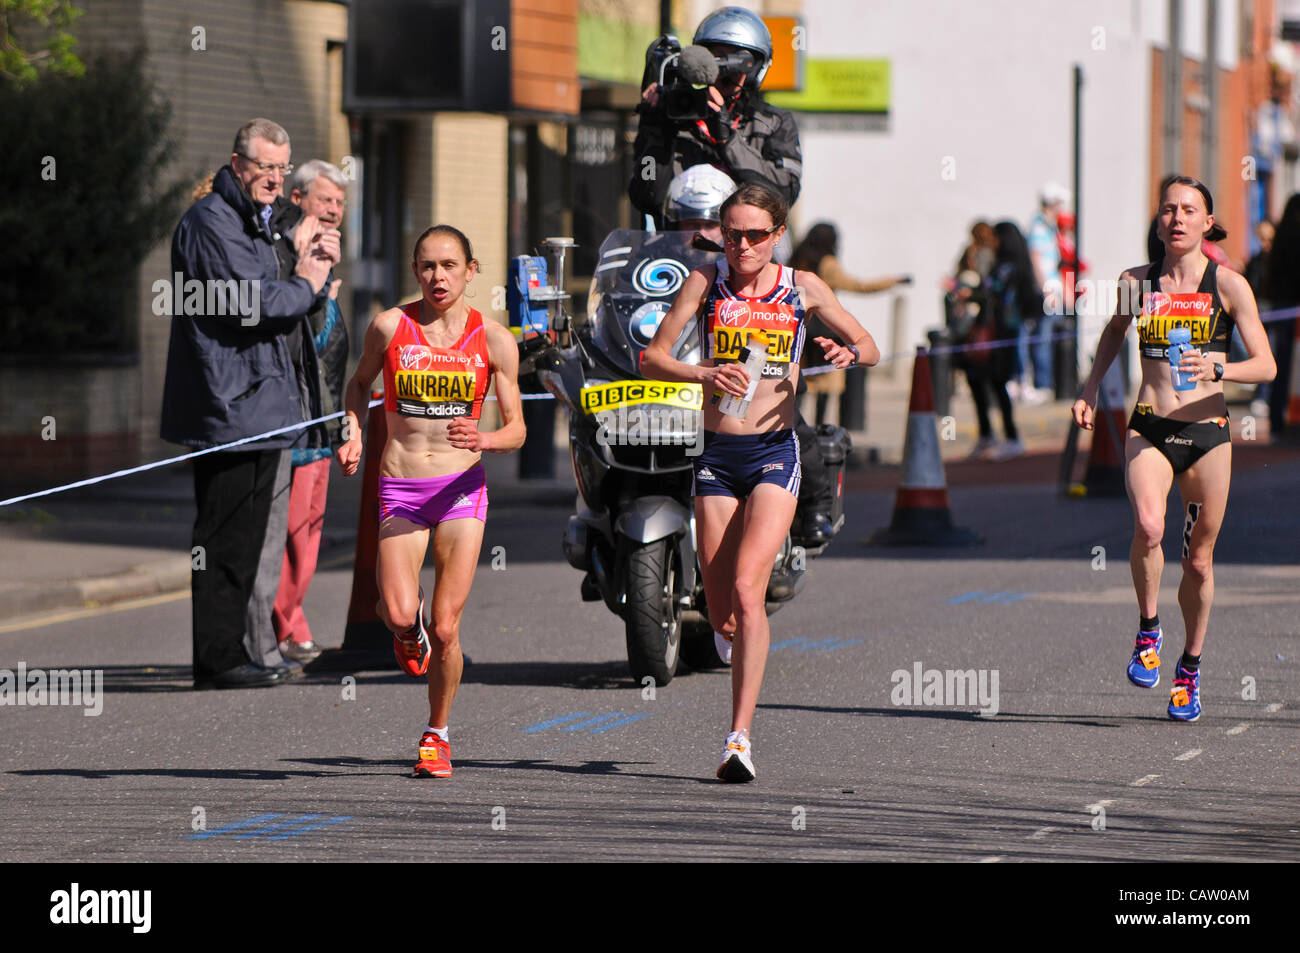 Londra, Westferry, Canary Wharf, nei pressi di miglio 16, 22 aprile 2012, concorrenti nella maratona di Londra 2012 hanno quasi dieci chilometri in più per andare. GB Elite donne. Nella foto, da sinistra a destra (e posizione di finitura), Freya Murray (13th), Louise Damen (16th), Claire Hallissey (11a). Foto Stock